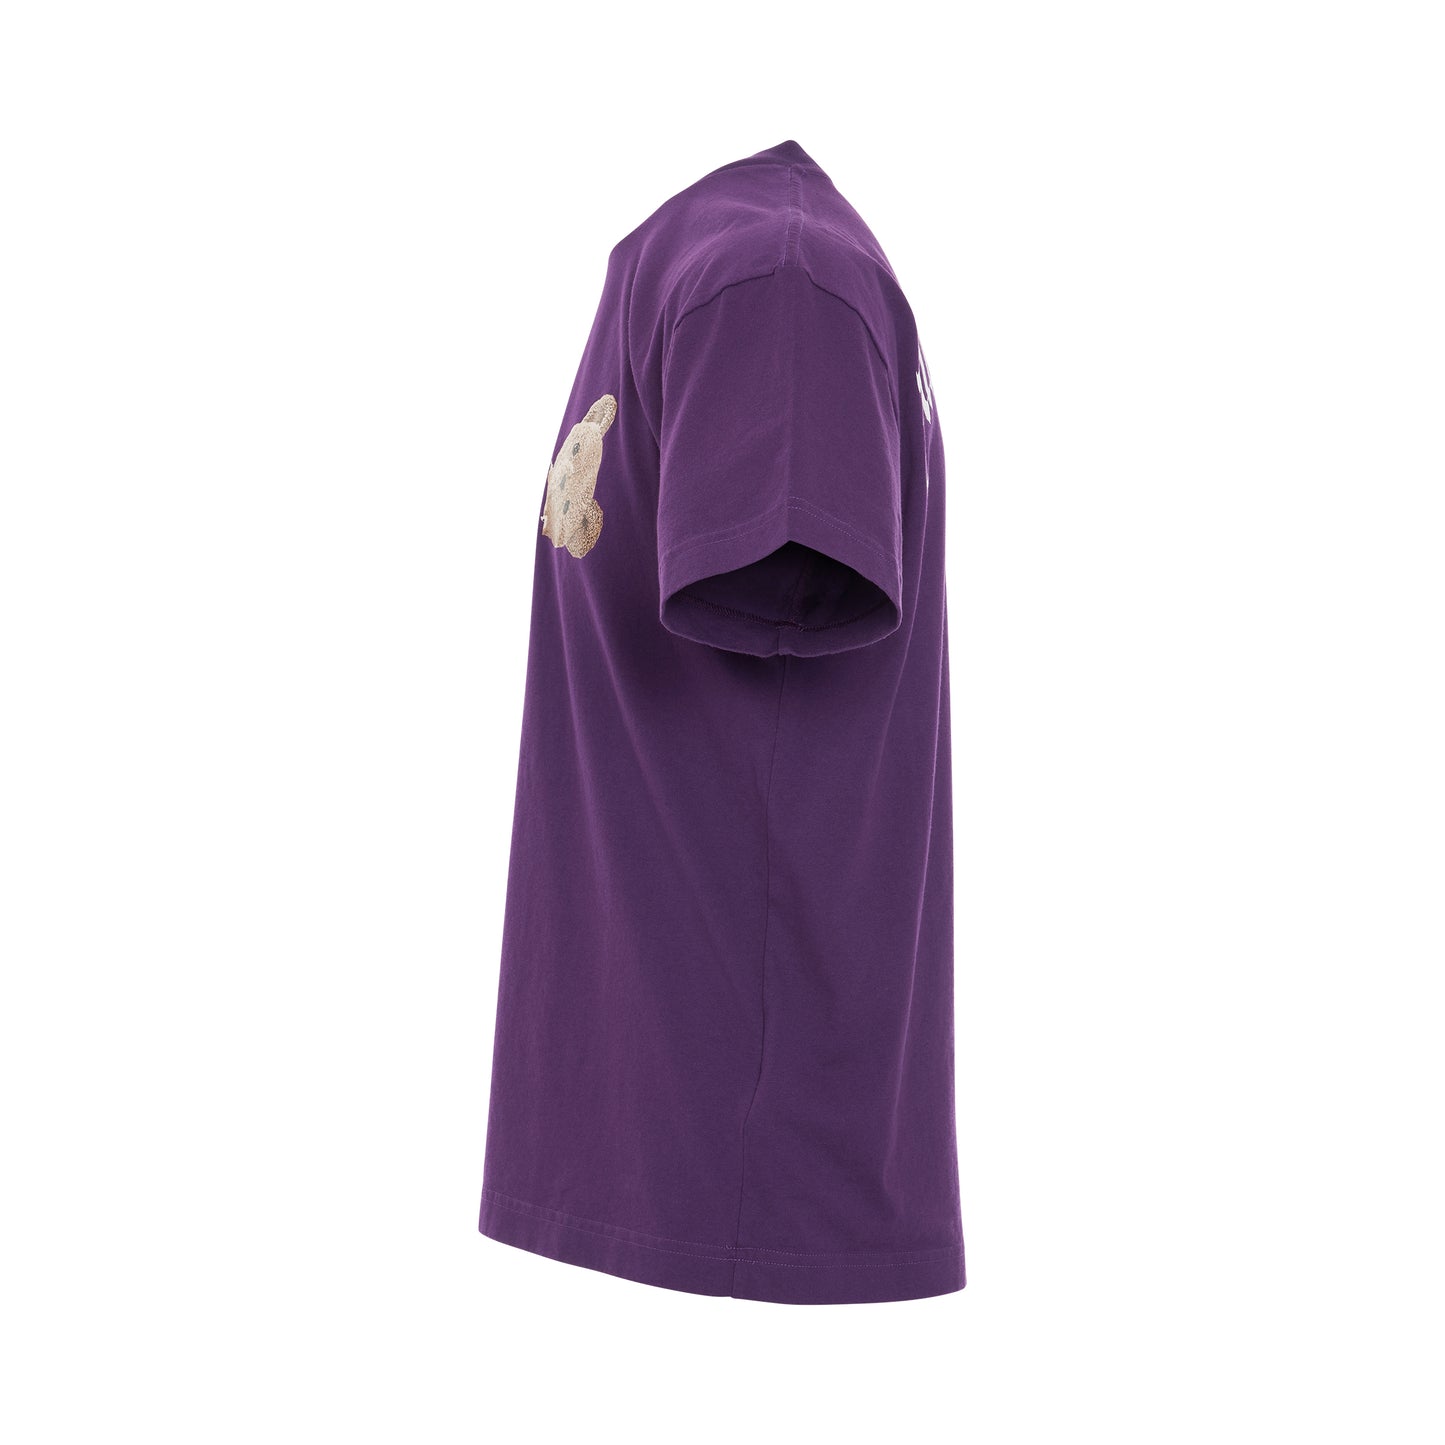 PA Bear Classic T-Shirt in Purple